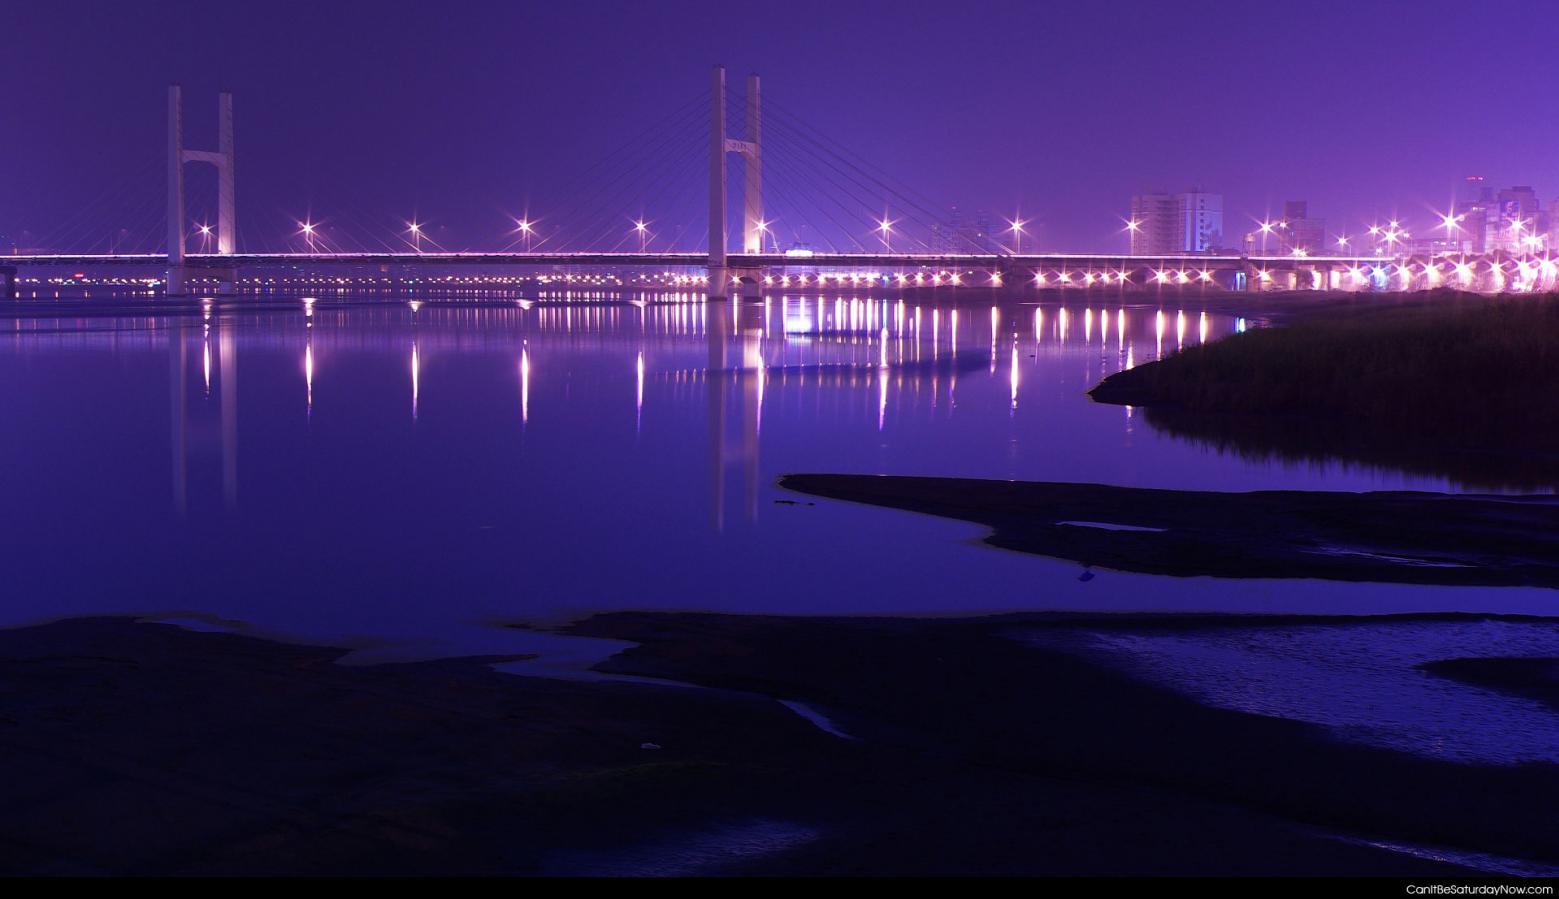 Suspension bridge - suspension bridge at night